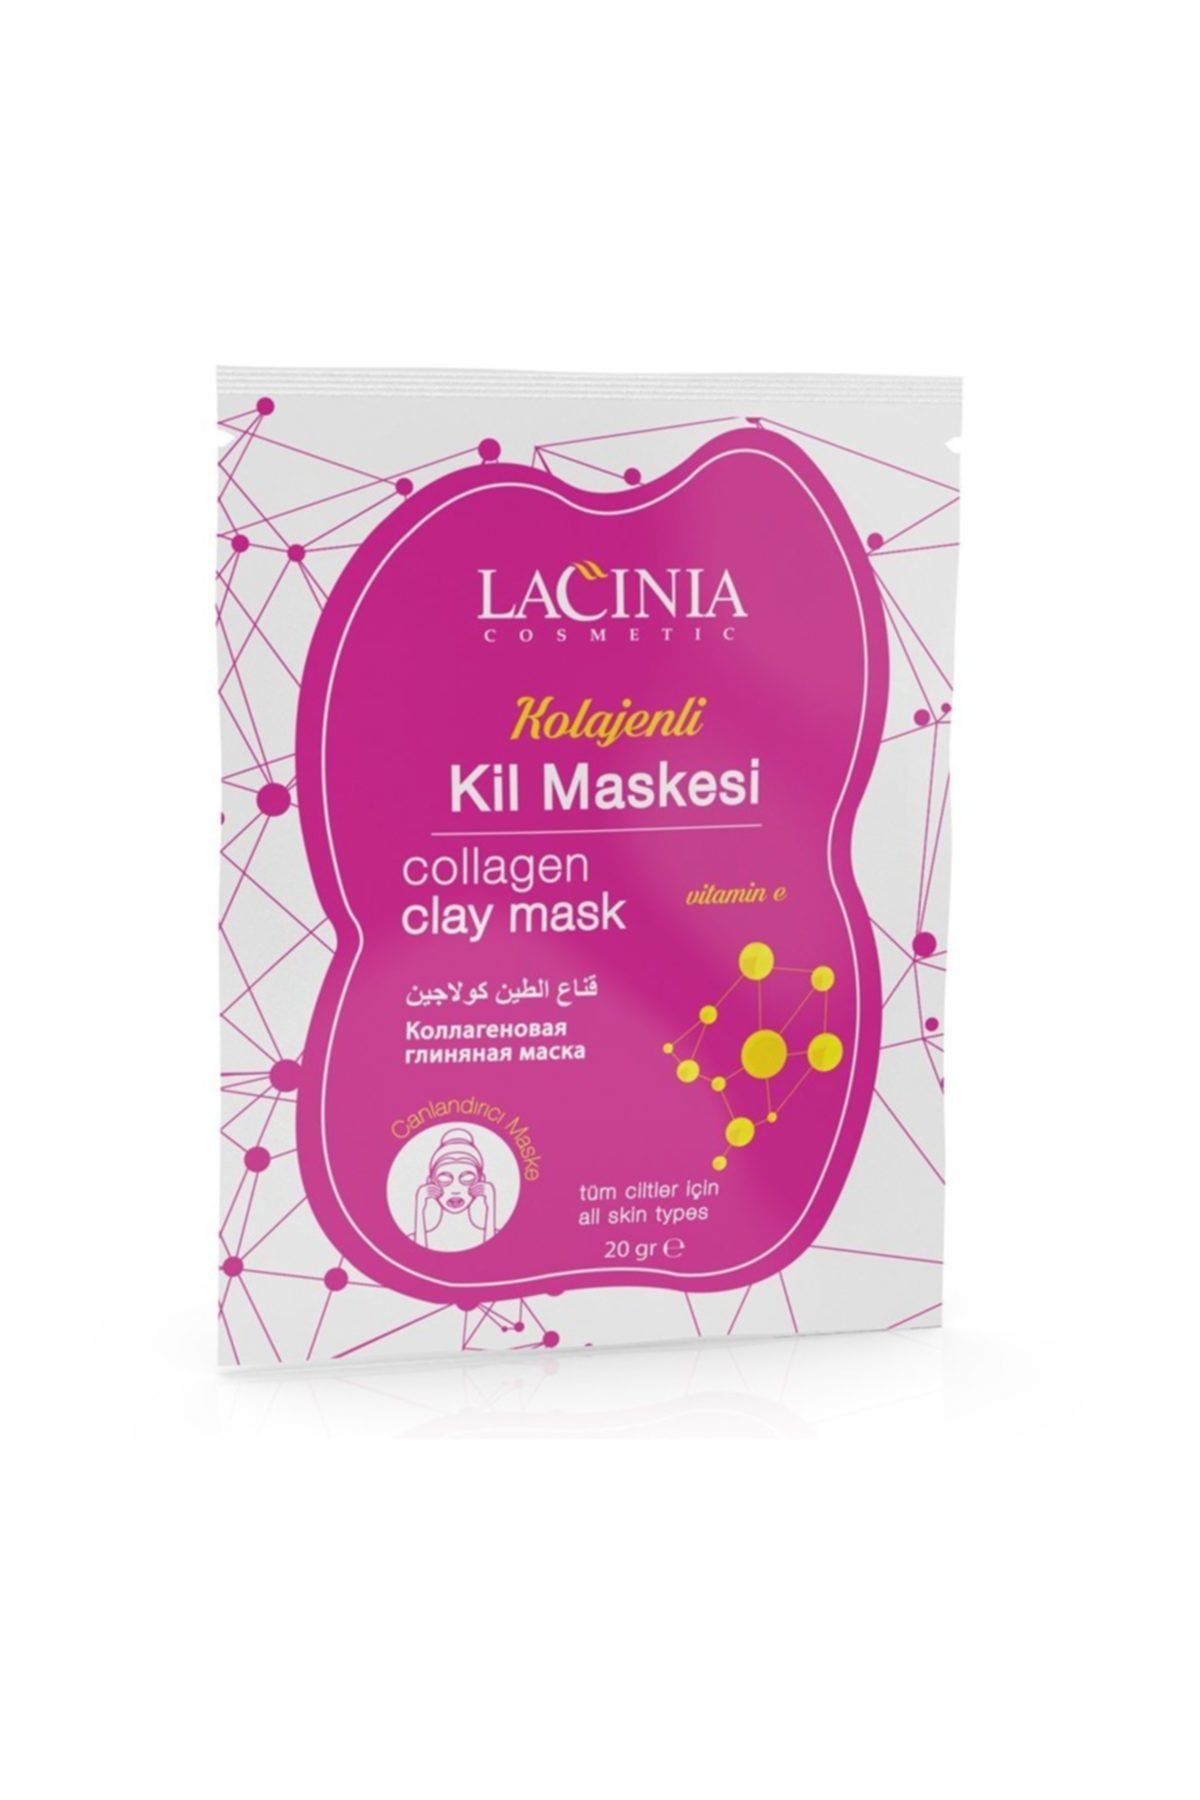 Lacinia Collagen Kil Maskesi